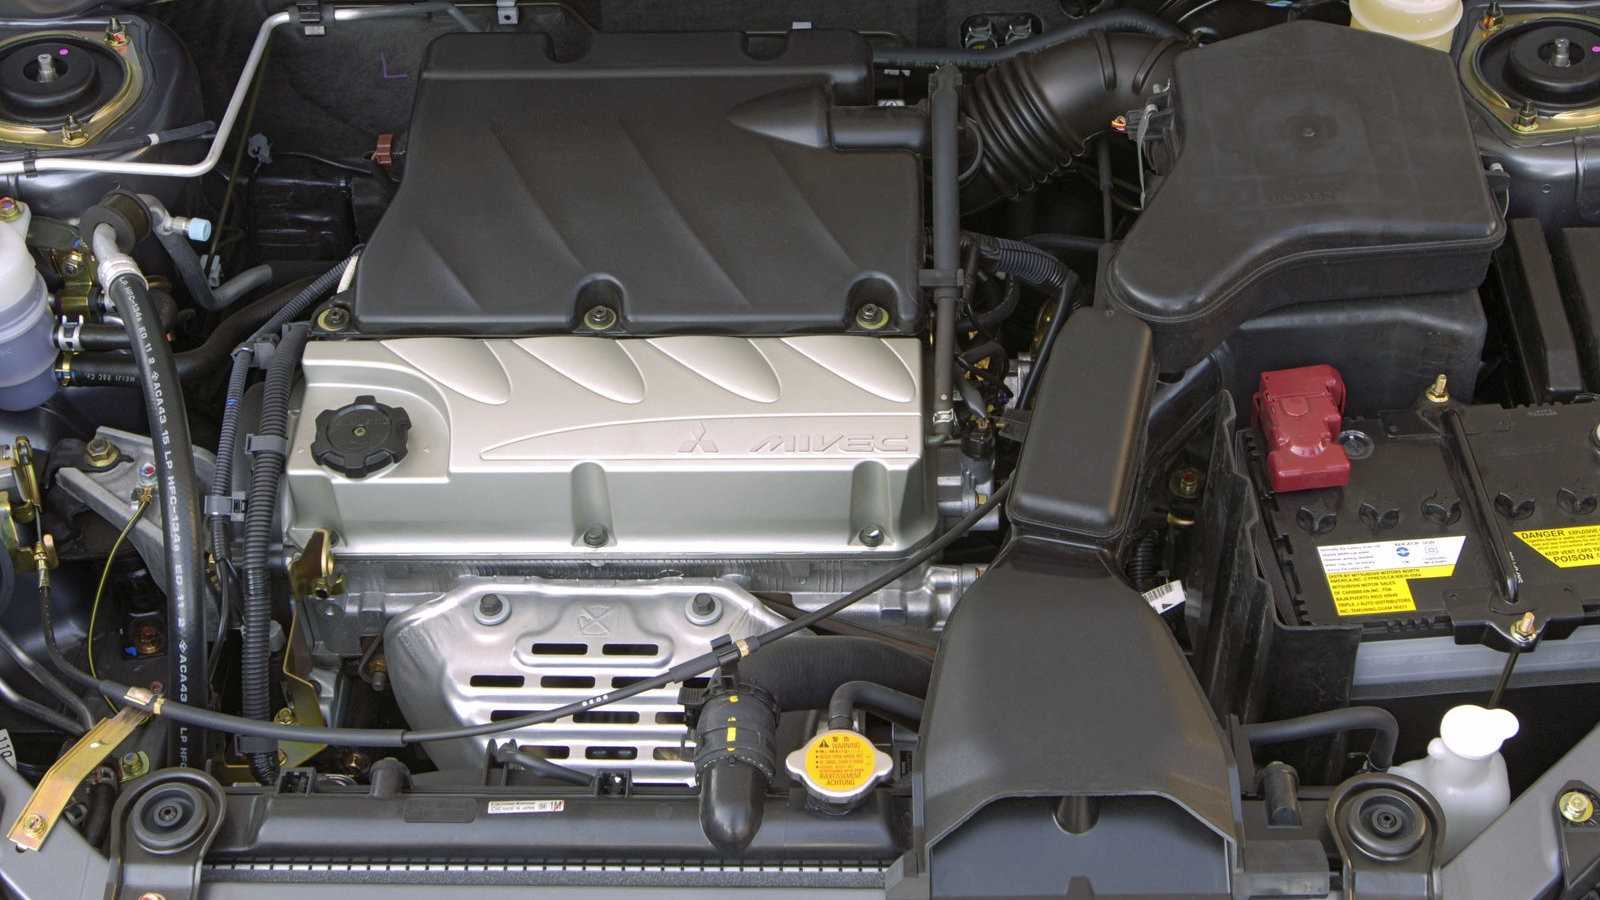 Двигатель митсубиси 6g73: характеристика, конструкция, особенности, обслуживание, ремонт, тюнинг